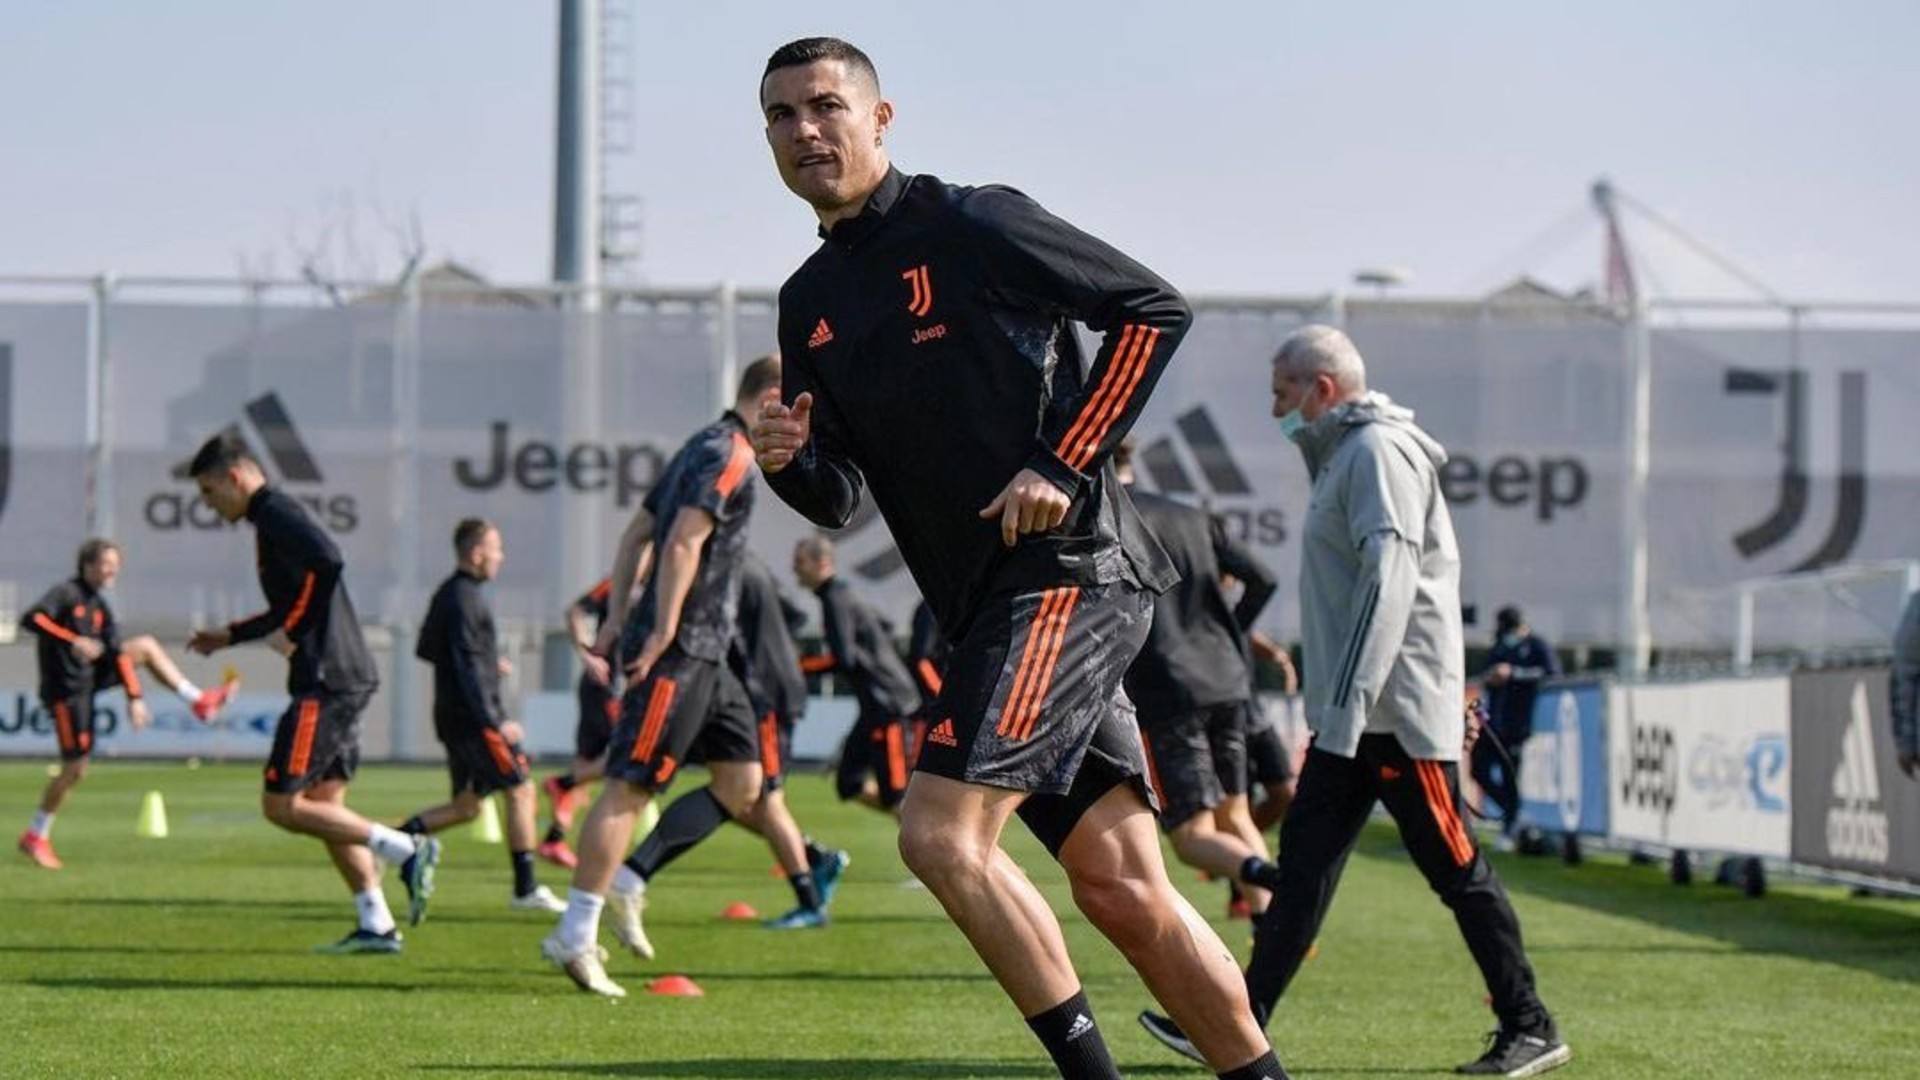 Cristiano Ronaldo training in a file photo; Credit: Cristiano Ronaldo Twitter page